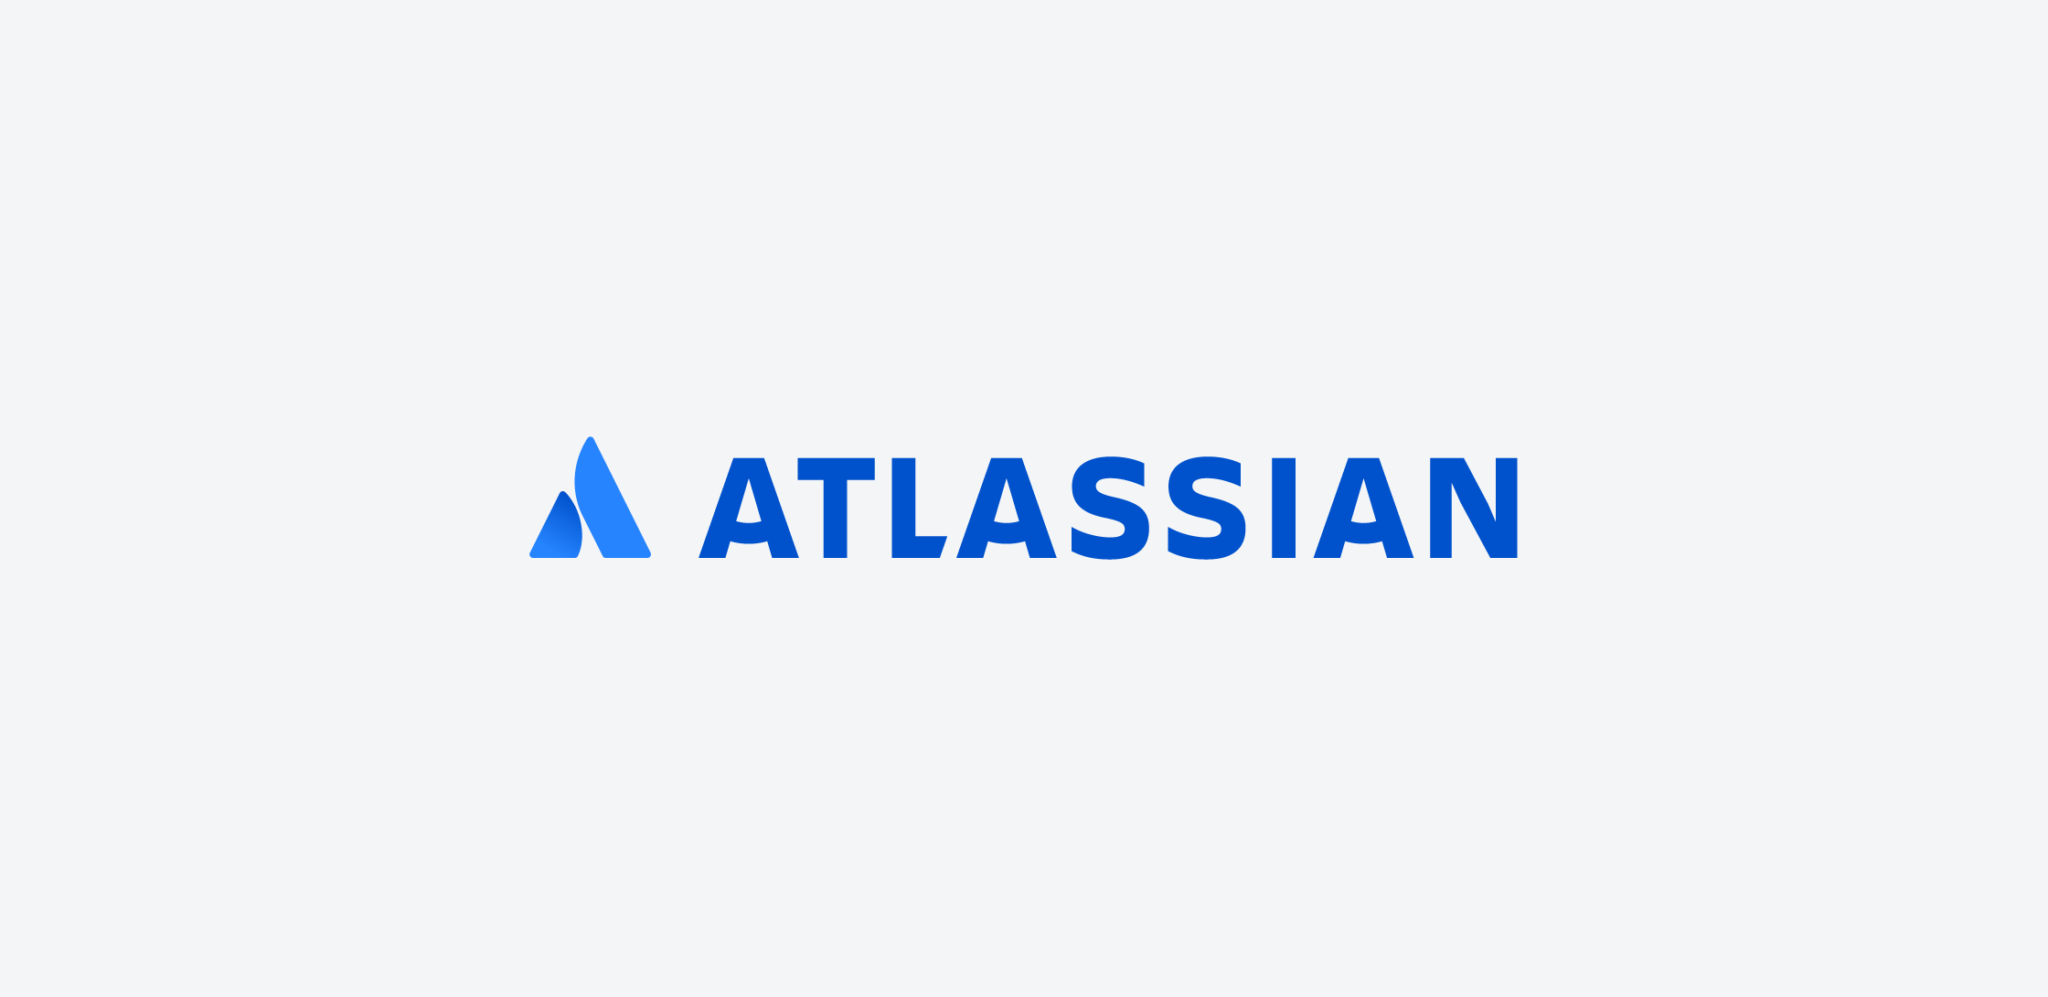 Atlassian прекратила продажи в российском сегменте и заморозила подписки некоторым компаниям